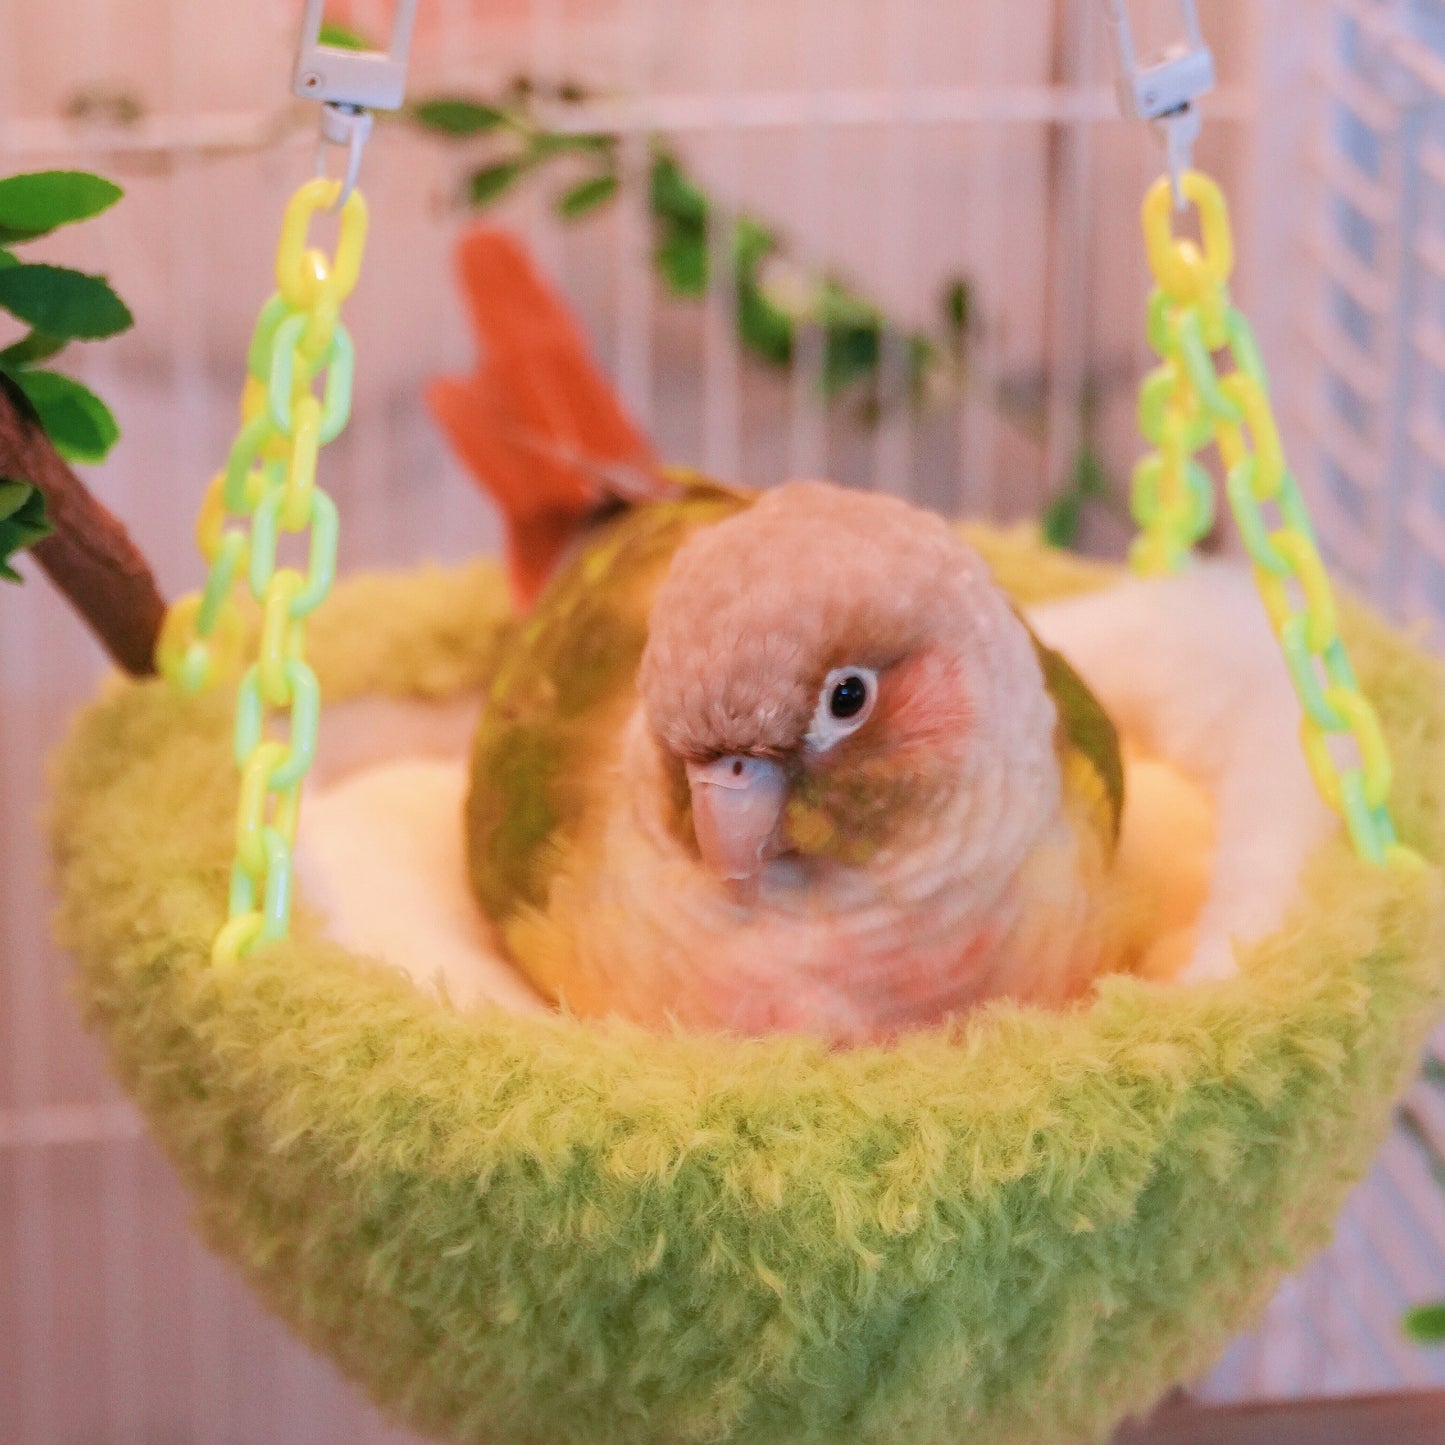 Nid de perroquet vert-jaune fabriqué en durian avec crochets et chaînes en plastique, nichoir suspendu pour cage, rempli de coton en forme de demi-lune, endroit de couchage confortable pour oiseaux de compagnie